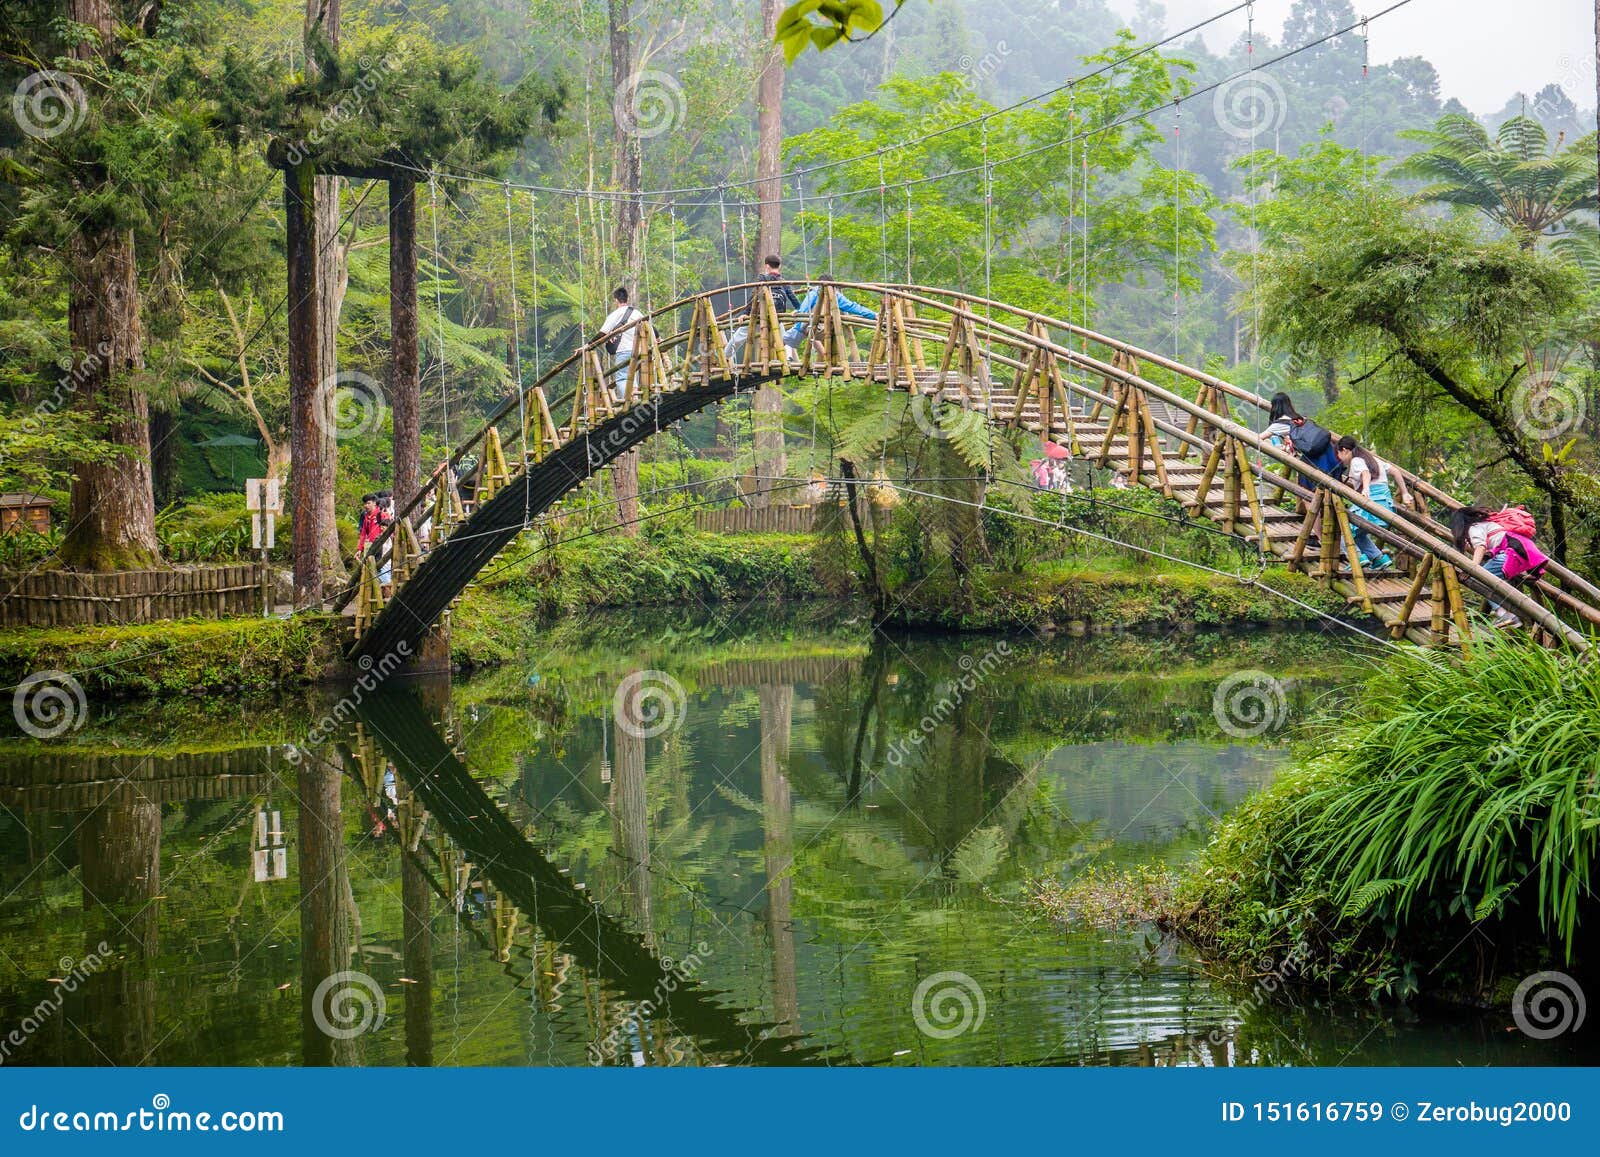 Har lært begrænse gå på arbejde Xitou Nature Education Area Editorial Stock Image - Image of xitou, bamboo:  151616759